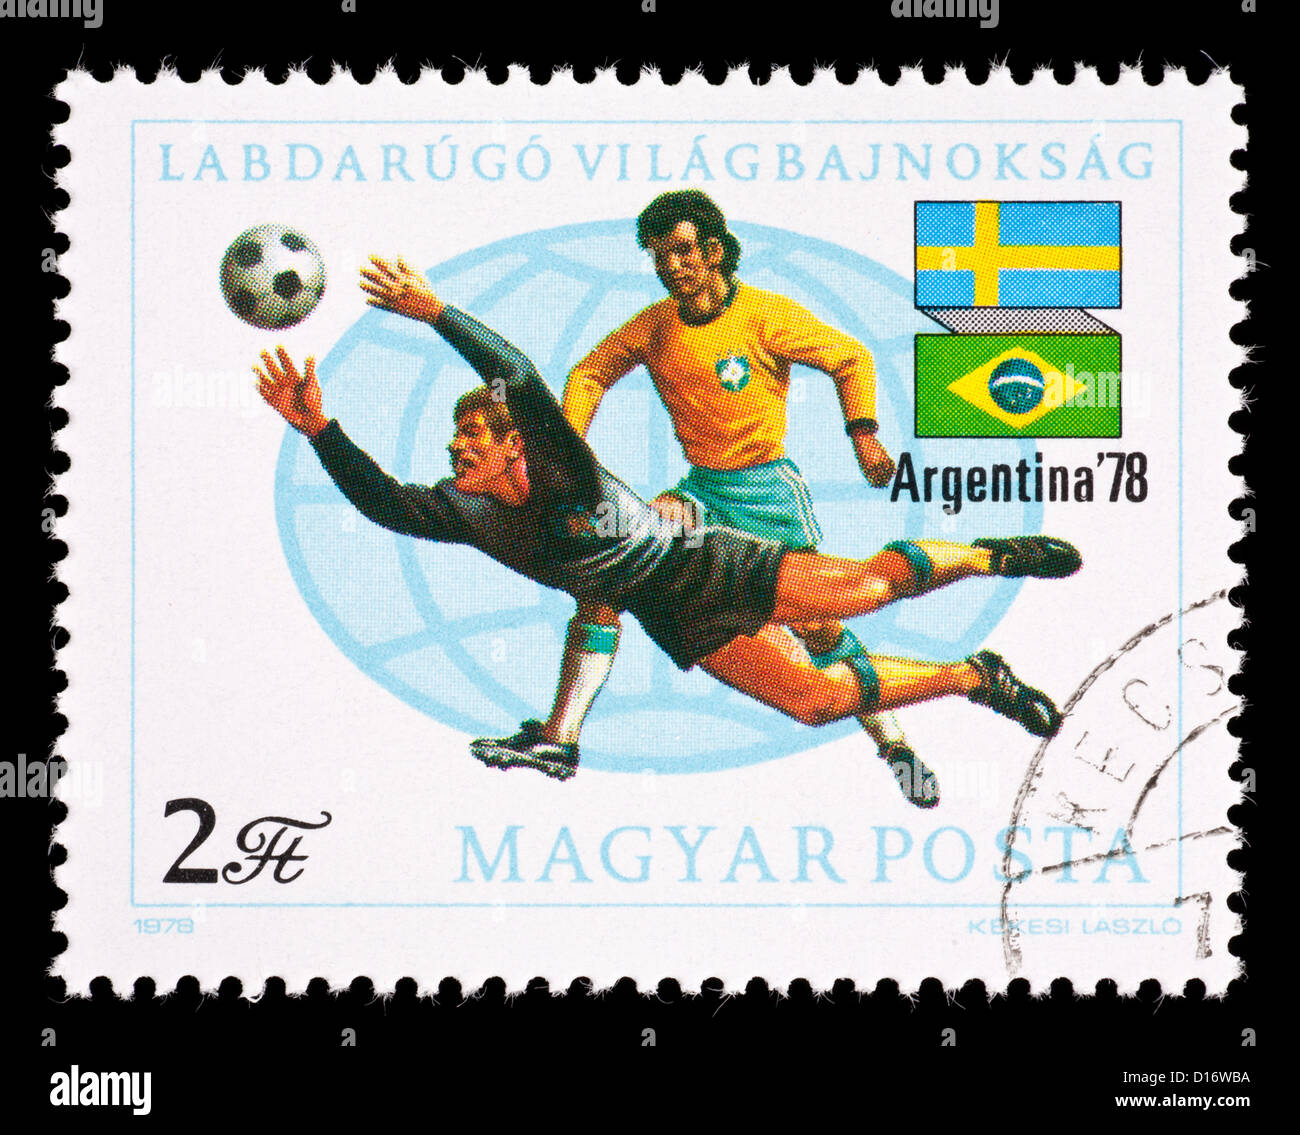 Timbre-poste de Hongrie représentant les joueurs de soccer. Banque D'Images